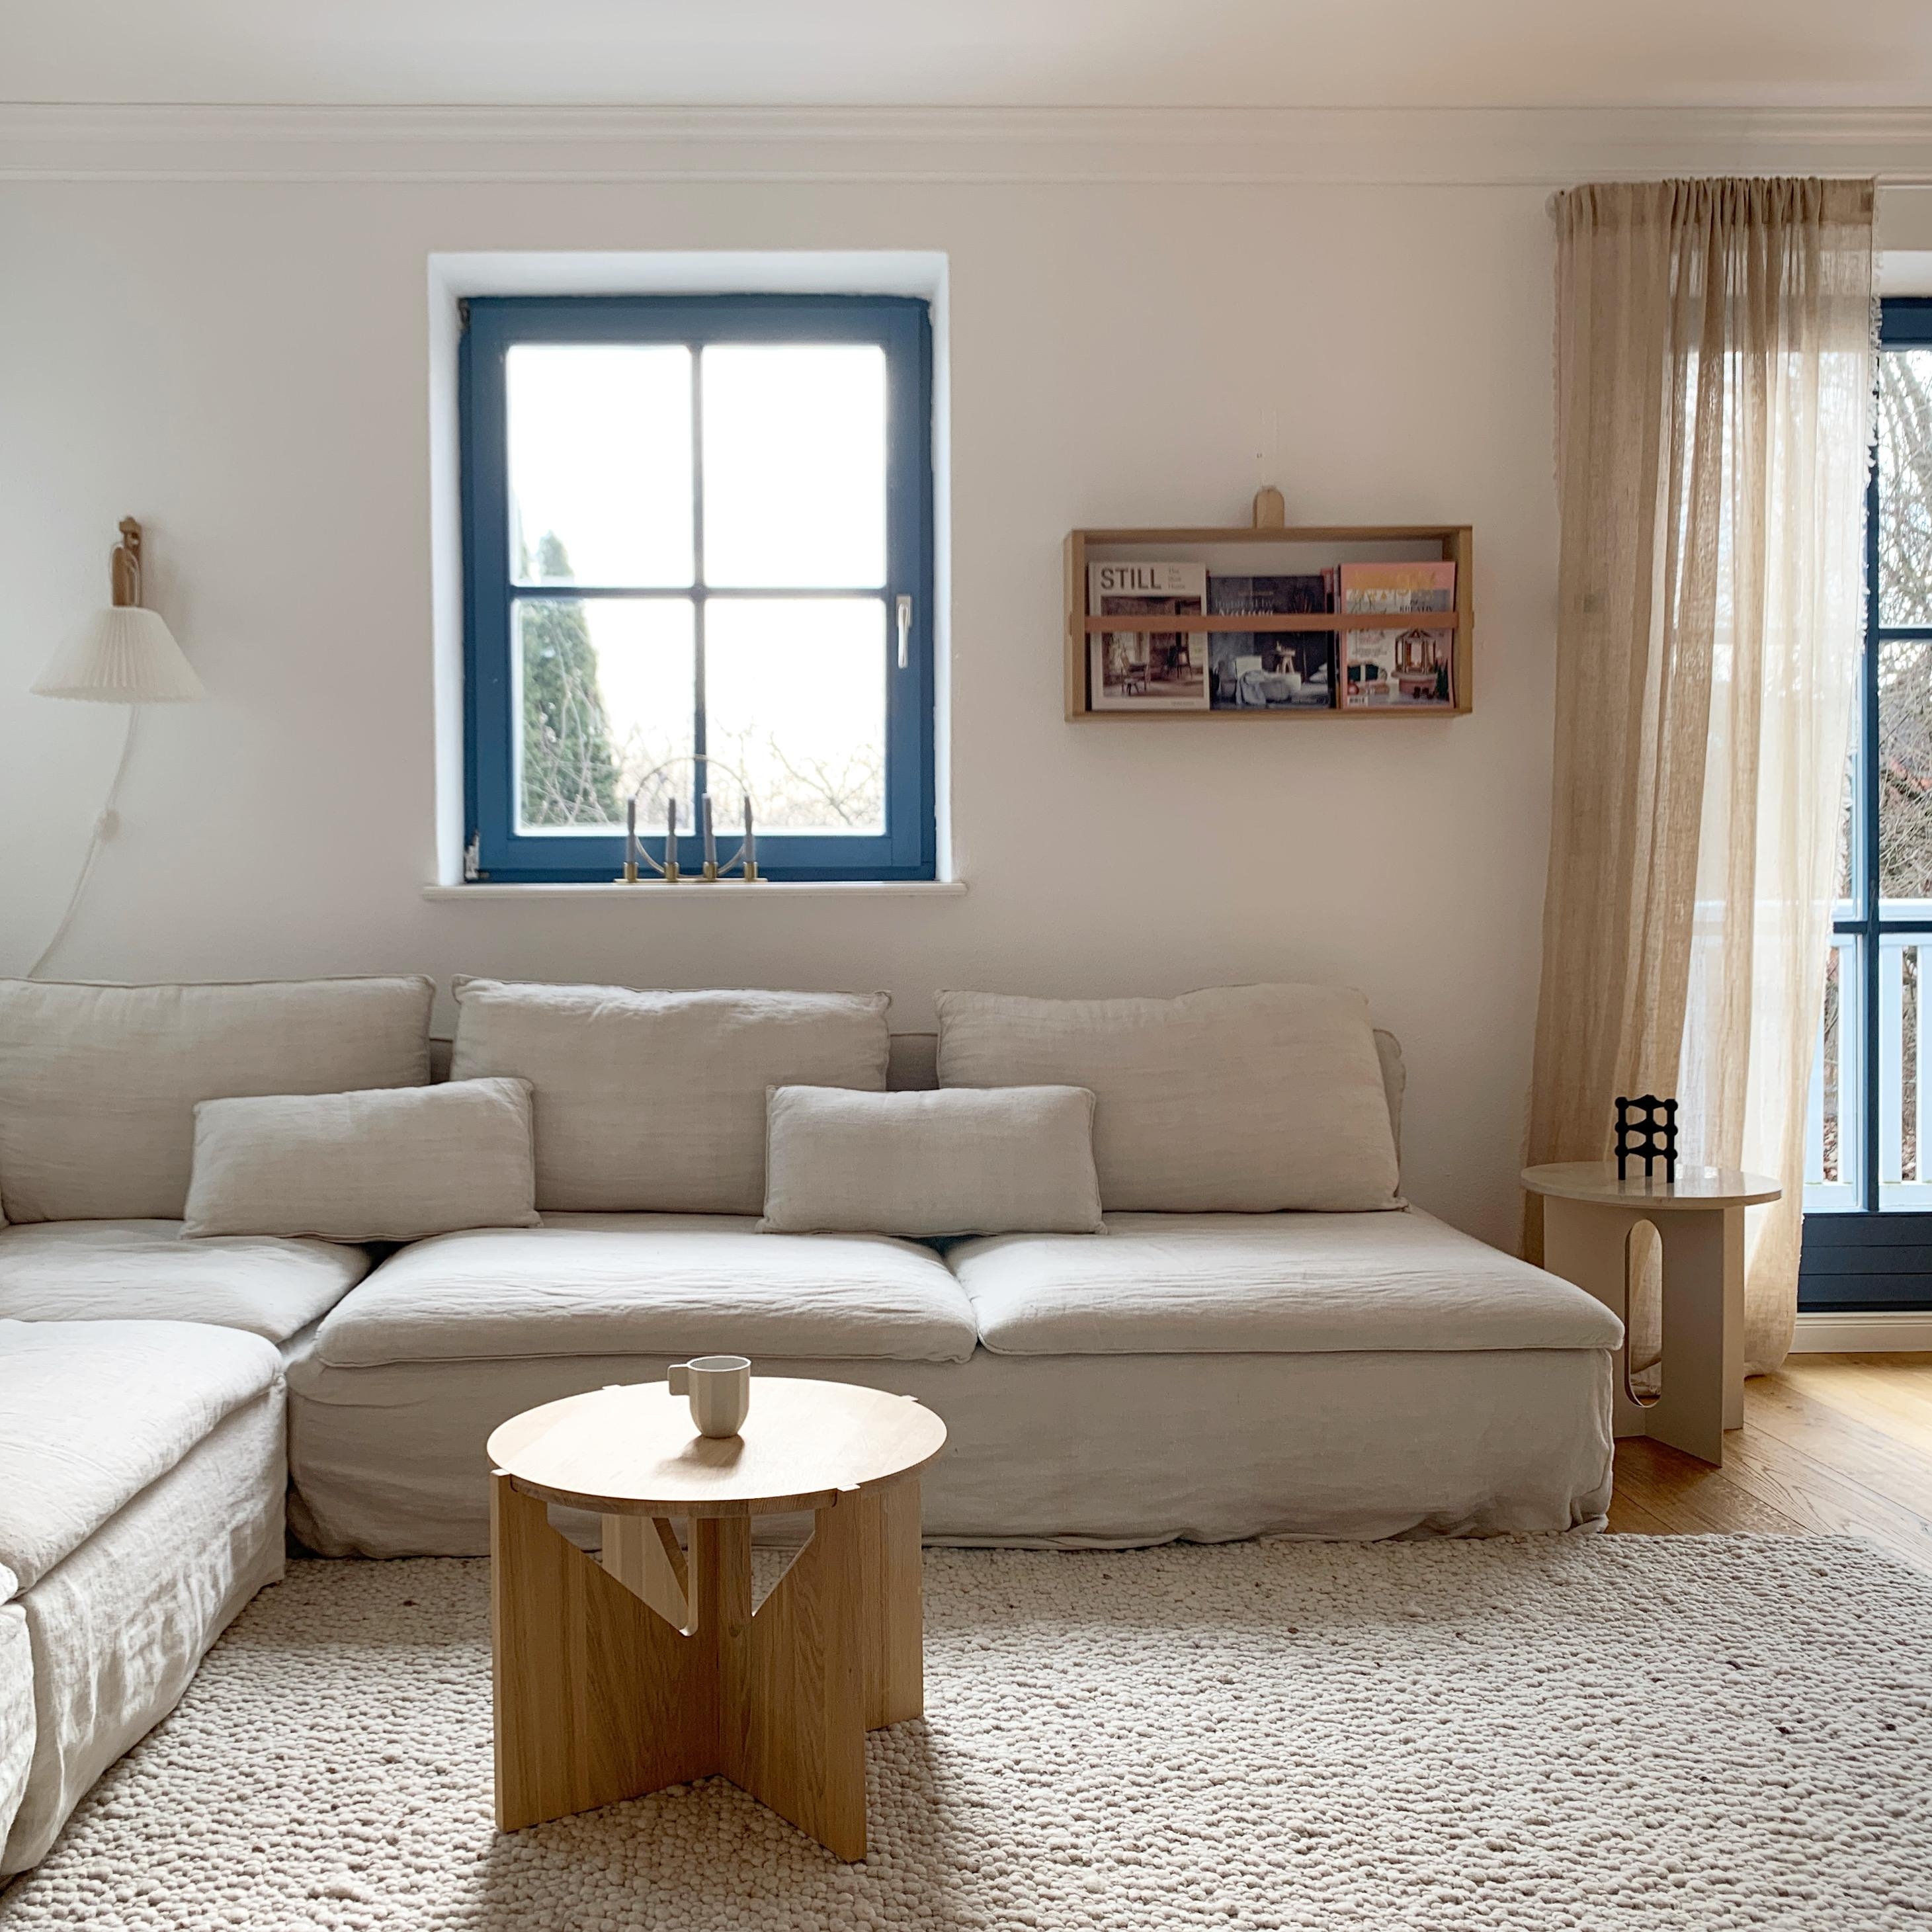 Startet gut ins Wochenende!
#wohnzimmer #couch #leinen #natural